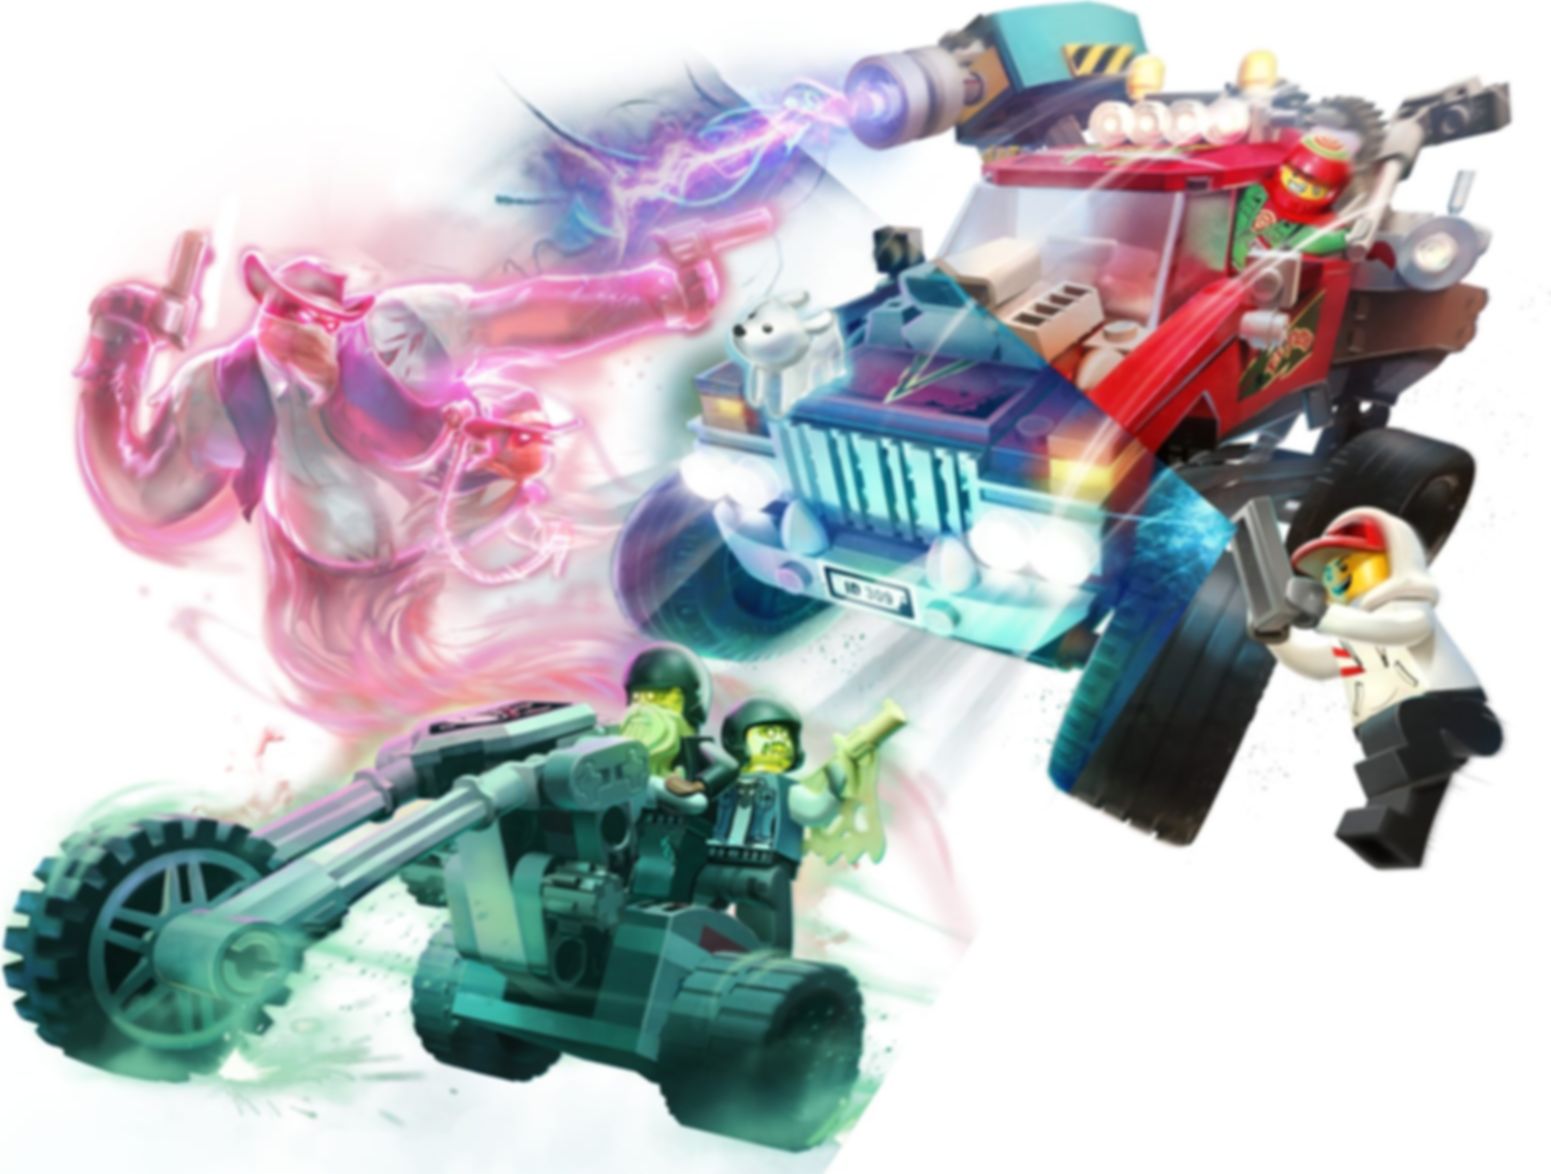 LEGO® Hidden Side El Fuegos Stunt-Truck spielablauf